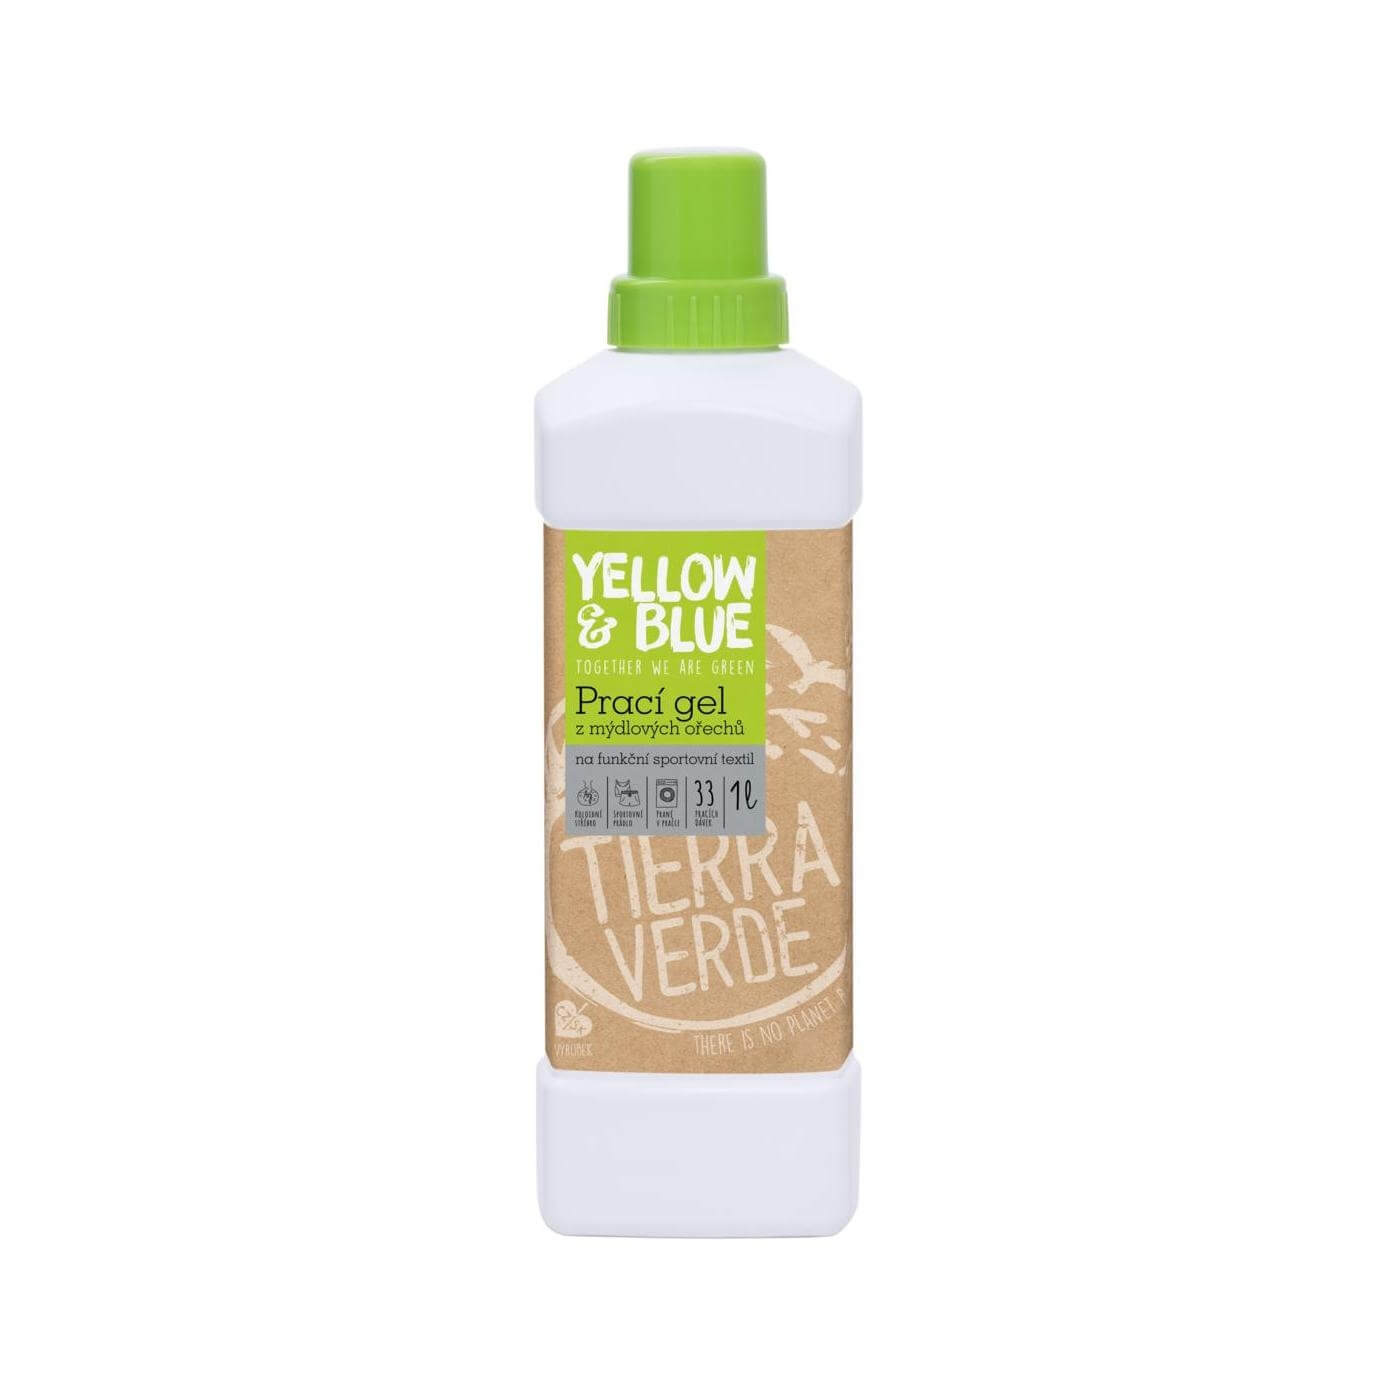 Tierra Verde Prací gel z mydlových orechov na funkčné prádlo s koloidným striebrom 1 l + 2 mesiace na vrátenie tovaru